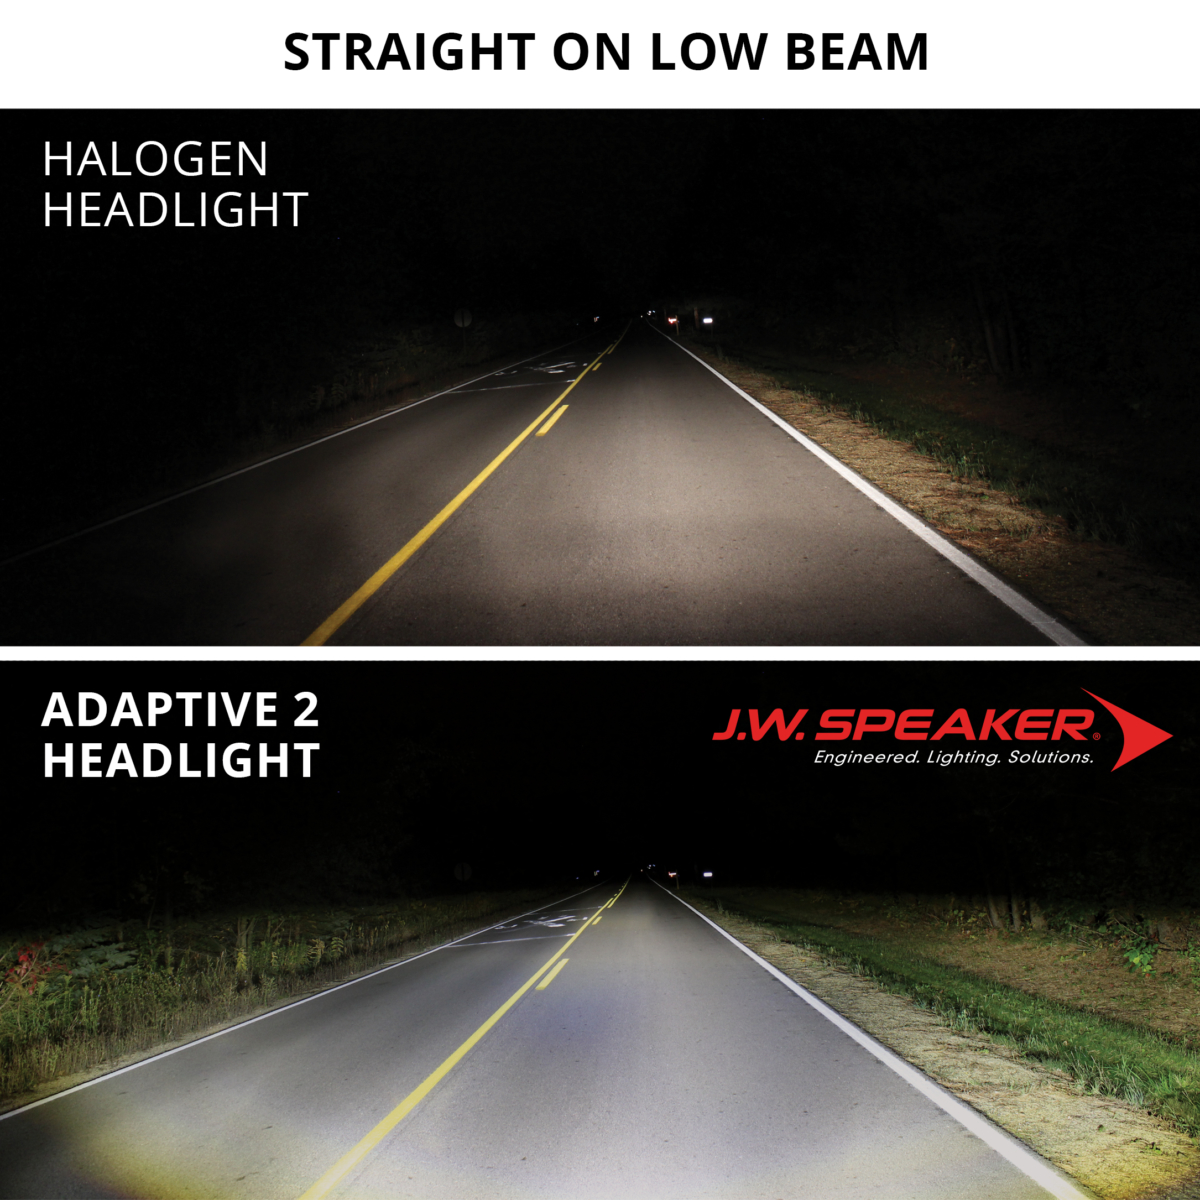 直線道路での一般的なヘッドライトとアダプティブ2ヘッドライトで照らしたときの見え方